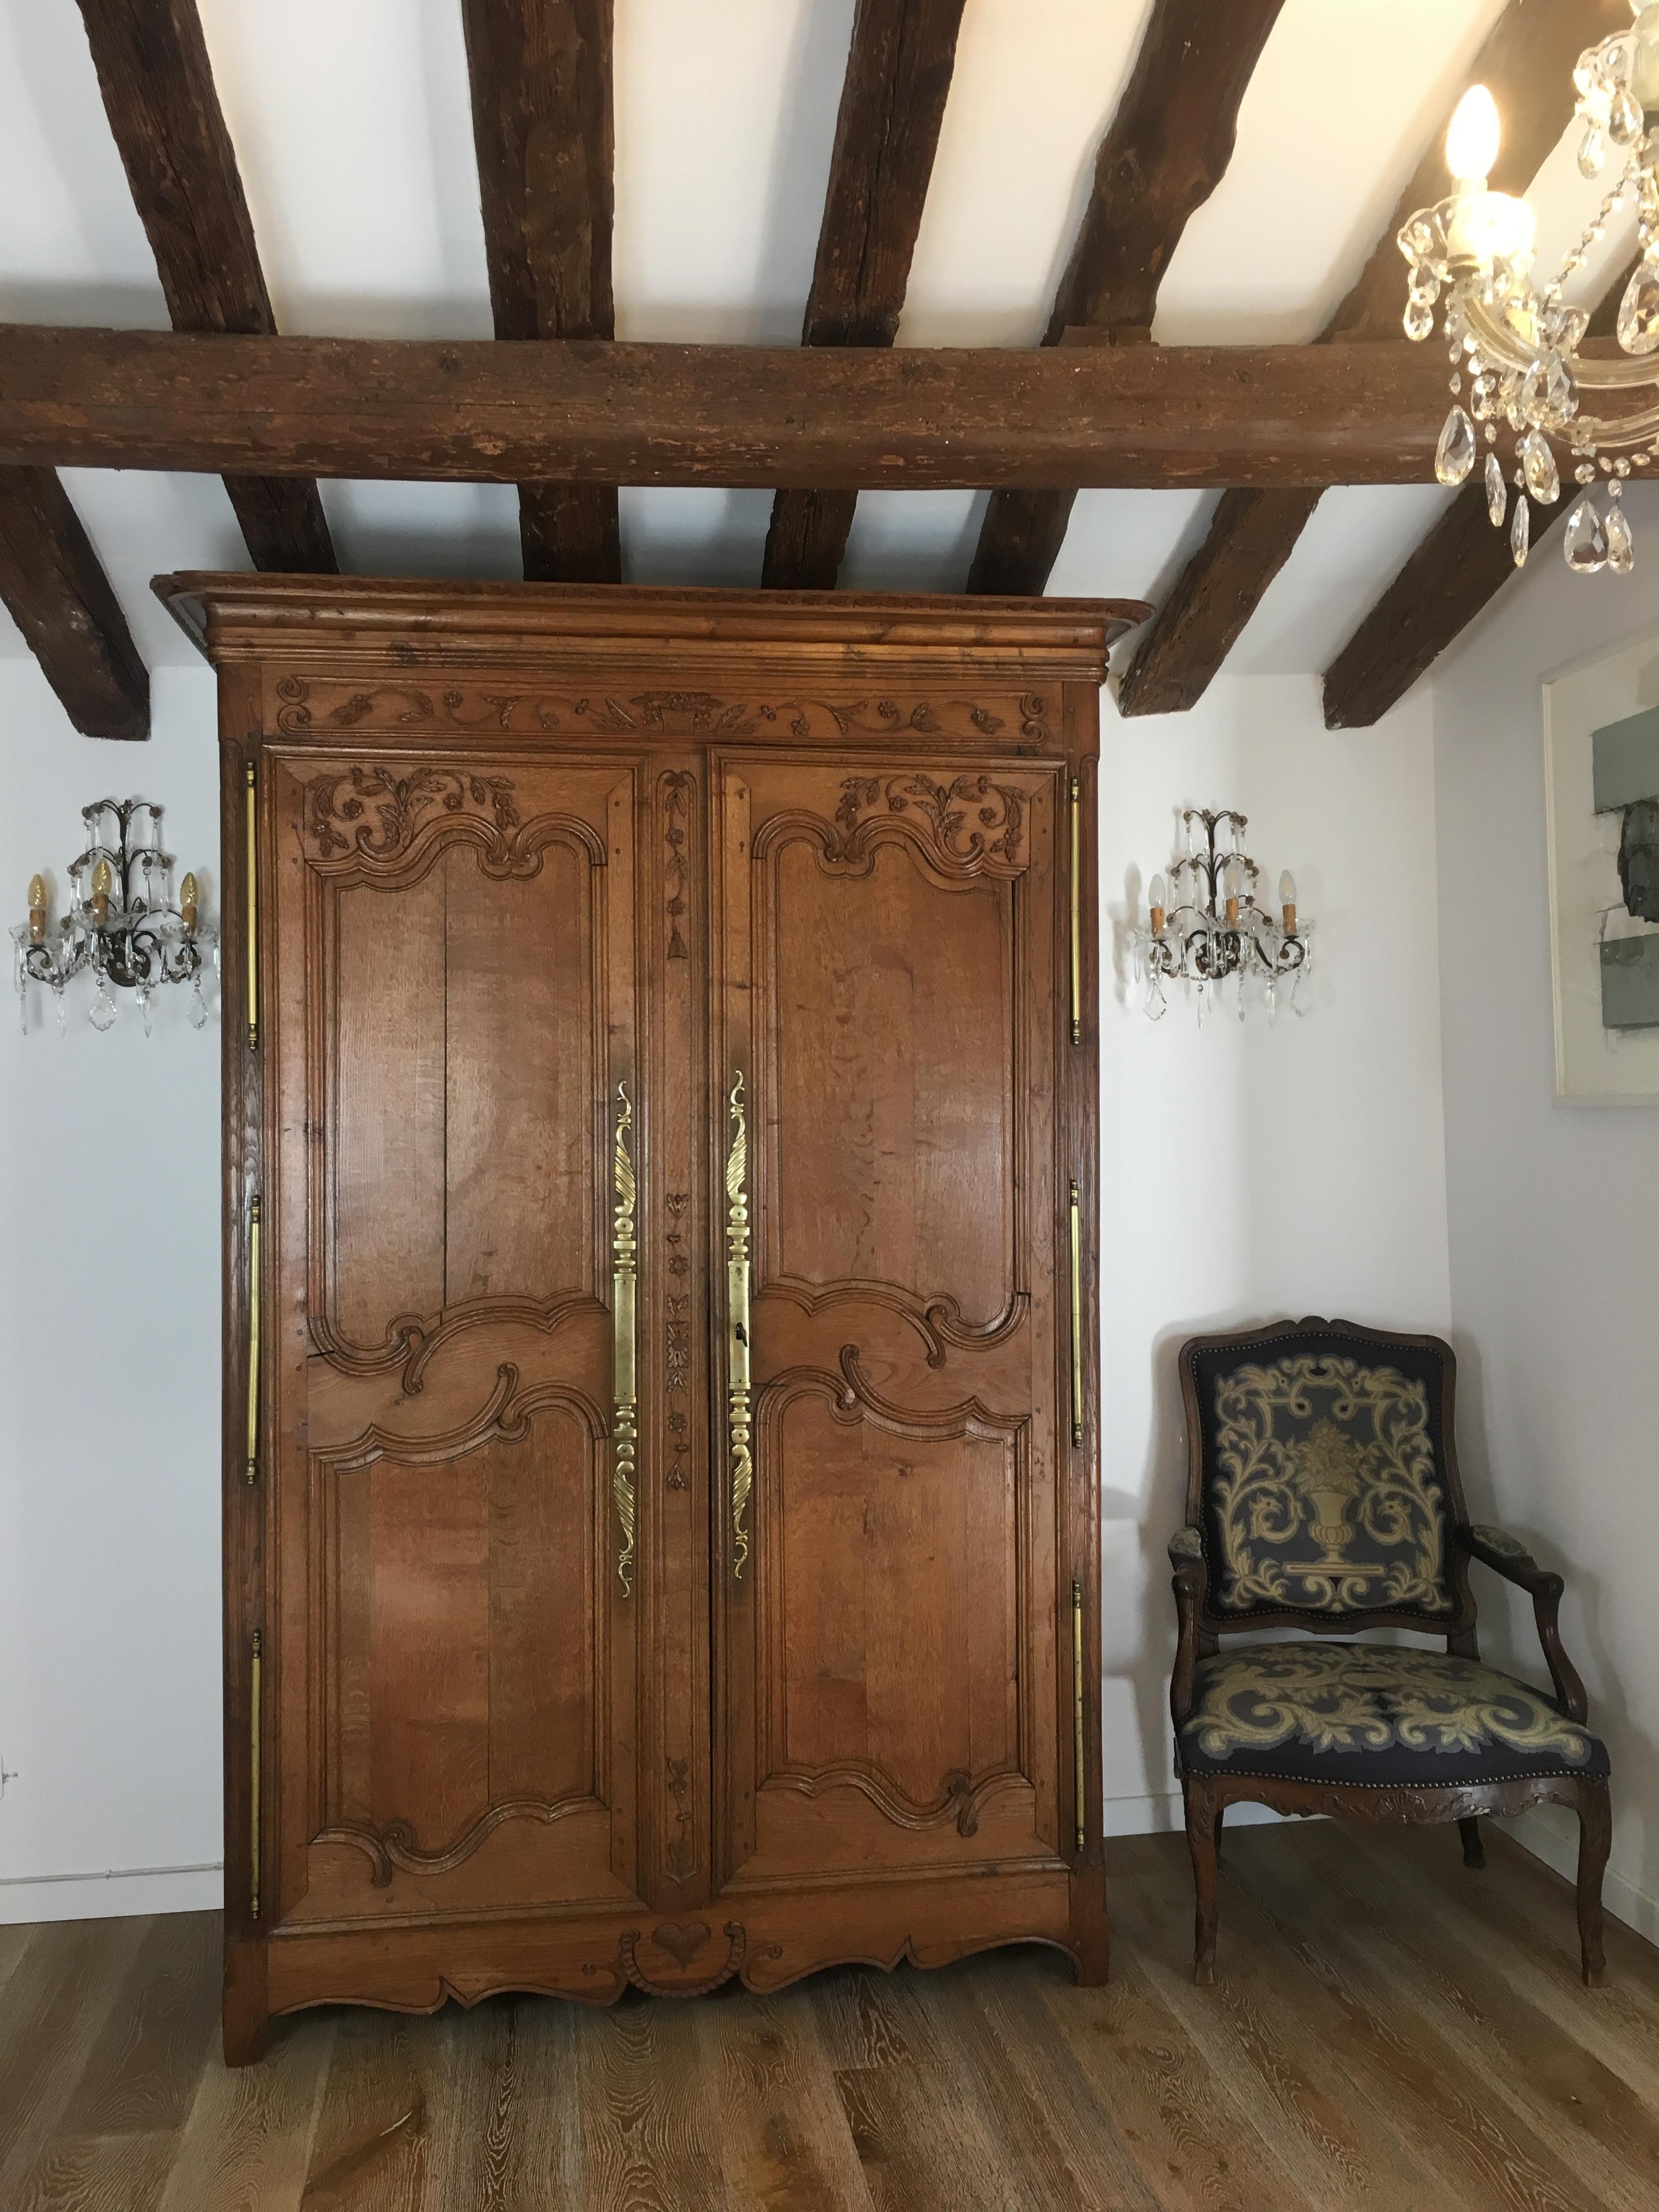 Imprégnée d'histoire, cette captivante armoire de mariage française du XIXe siècle de style Louis XV de Normandie est fabriquée en chêne blanc français et incarne le charme du style Louis XV. 

La frise ornementale et les panneaux surélevés